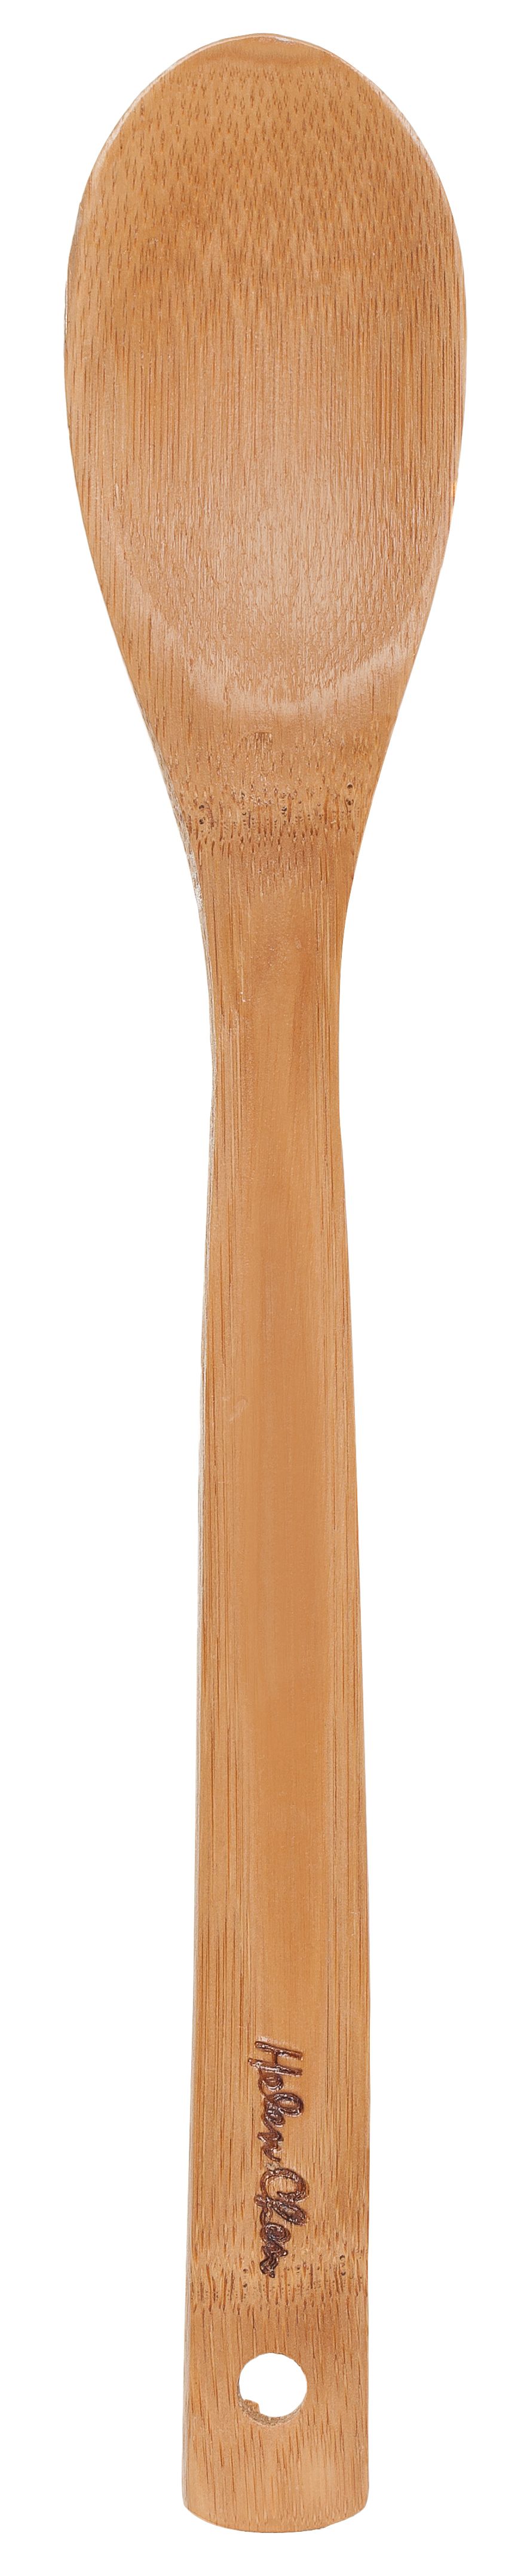 Bamboo Spoon - 12